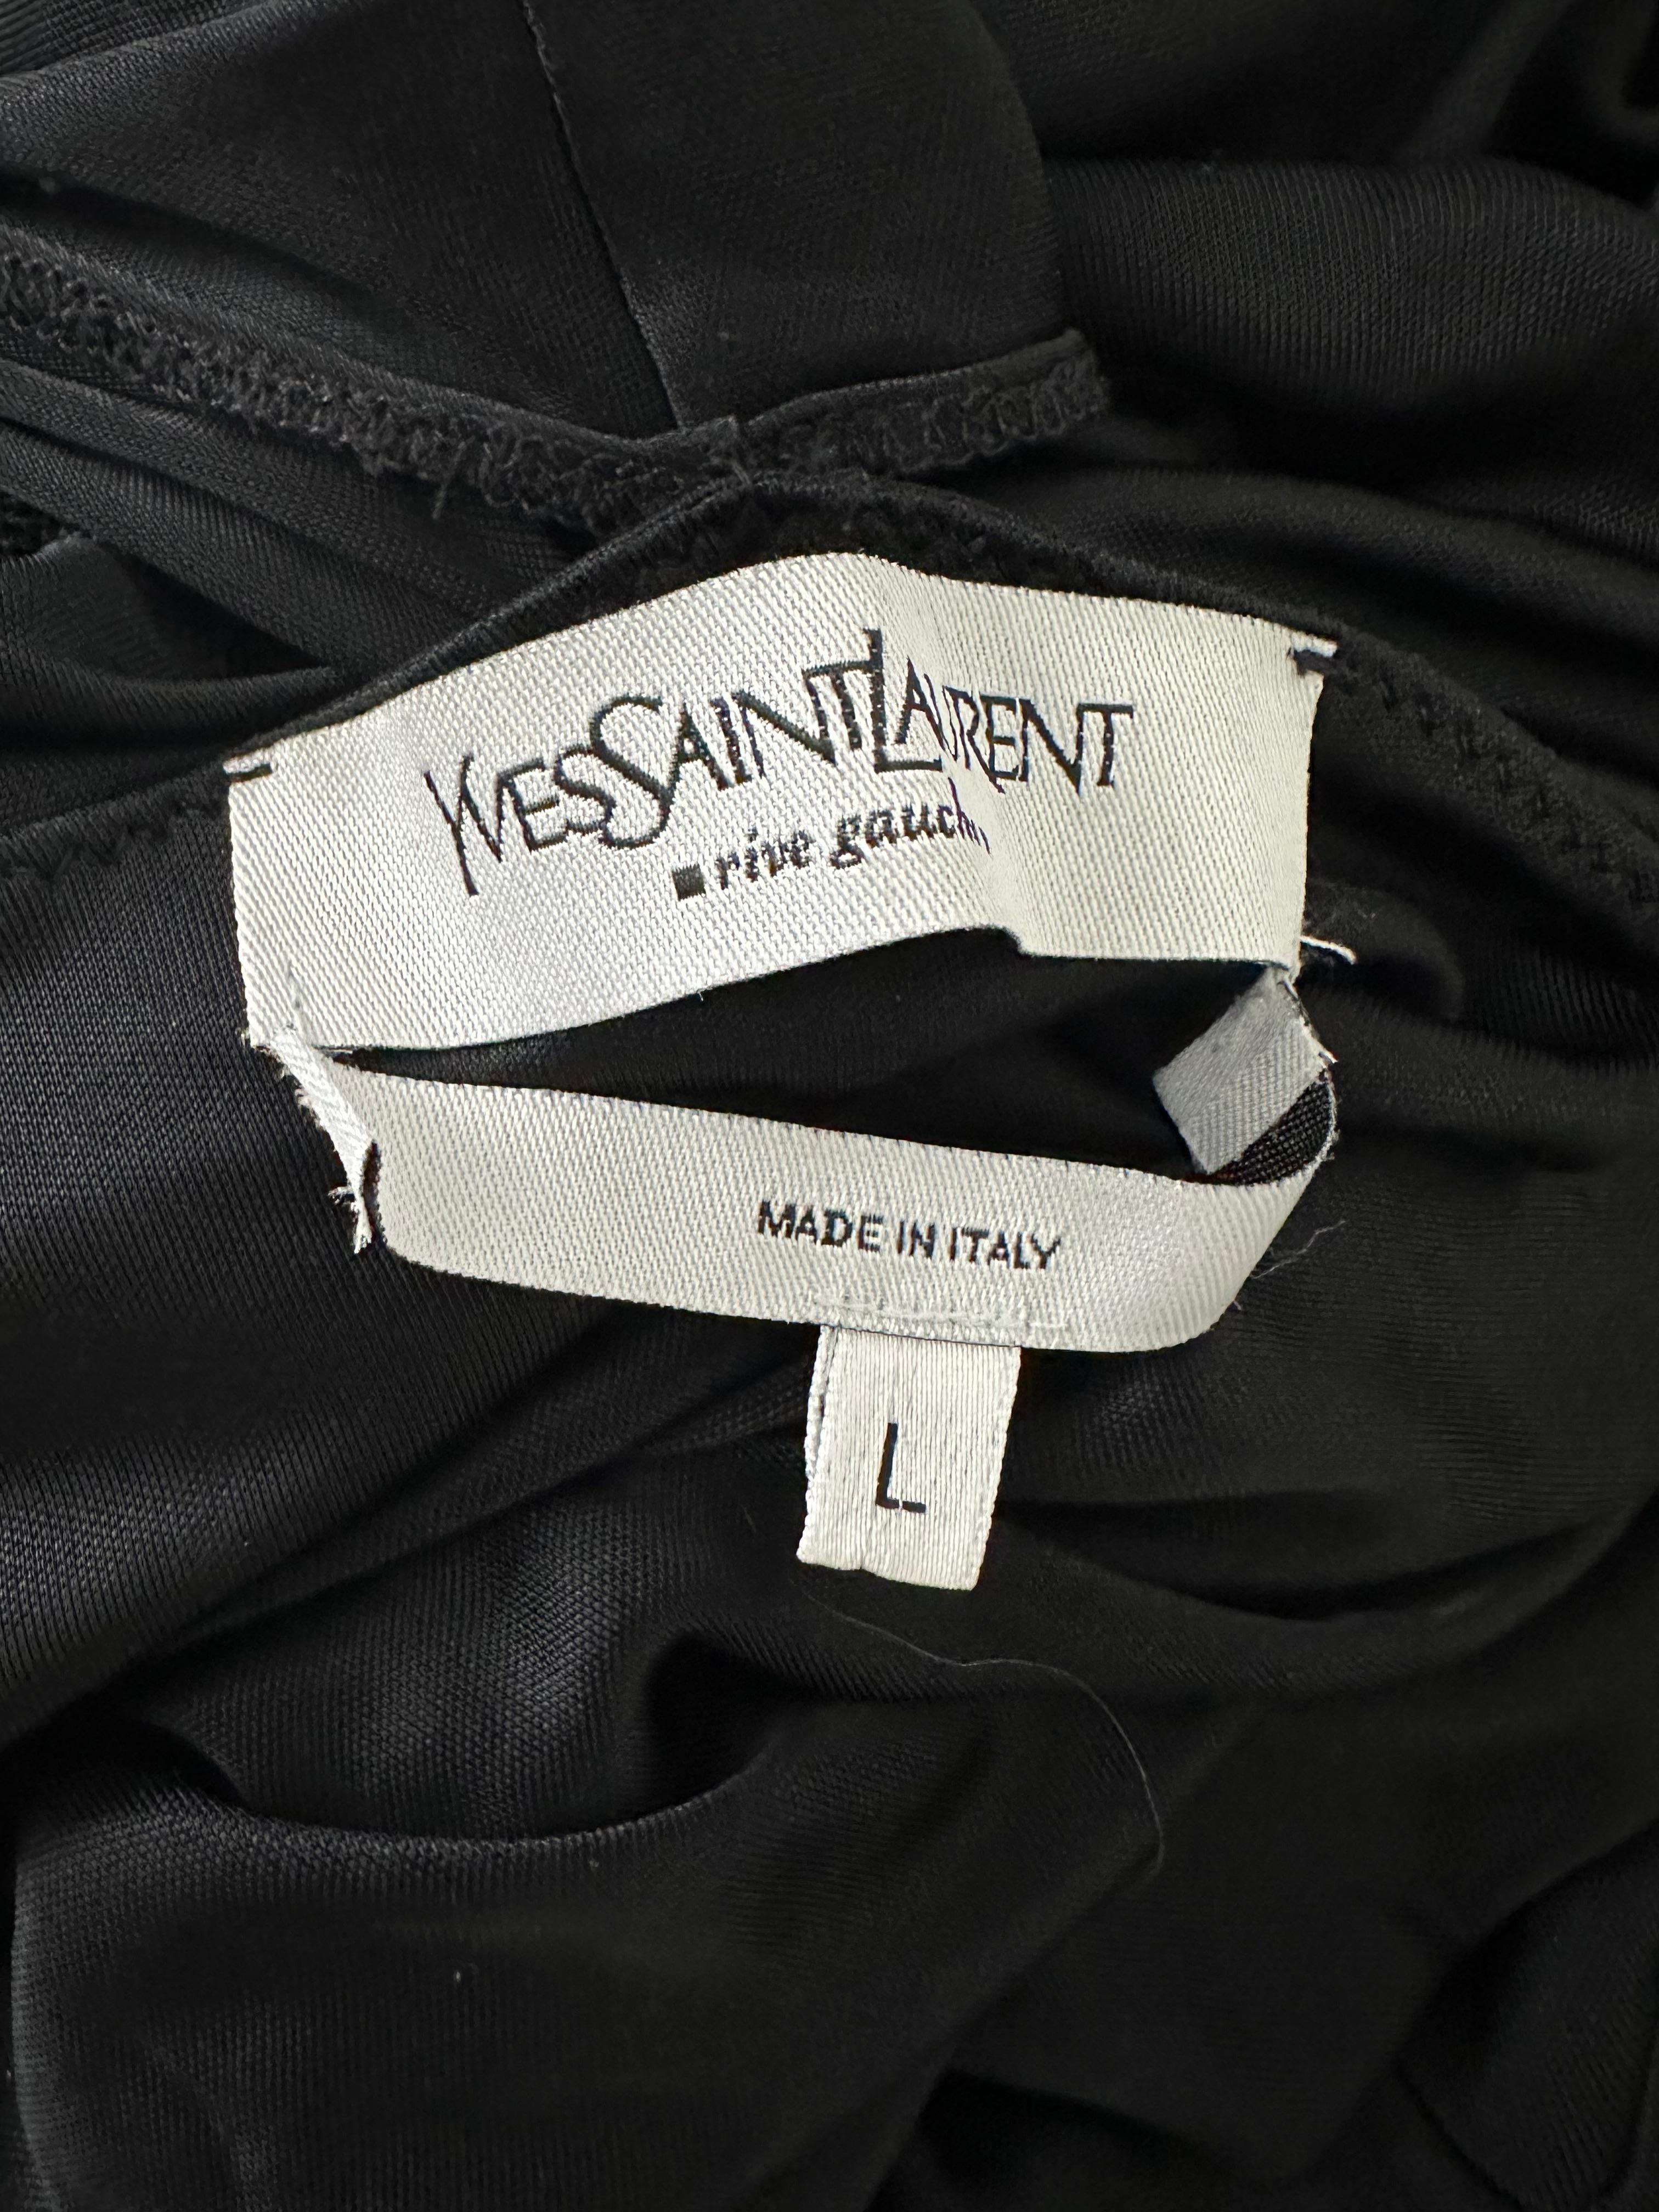 Yves Saint Laurent Rive Gauche by Tom Ford Schwarzer verschlungener Rock mit asymmetrischem Saum 

Tieferer Schnitt am Rücken

Größe L würde auch auf Größe M passen

 Kann auch als Kleid getragen werden